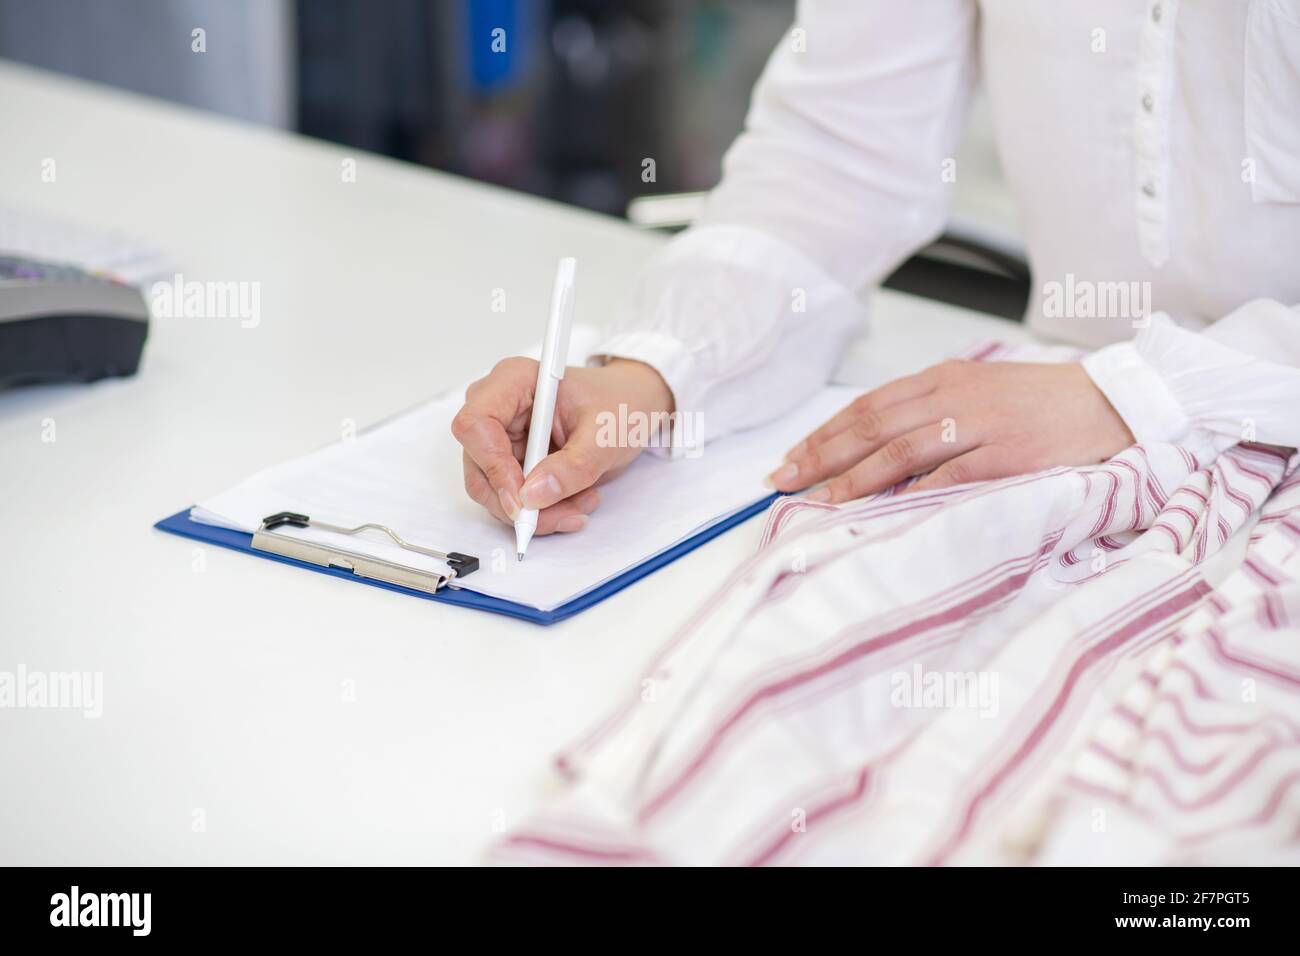 Le mani femminili scrivono con la penna sul foglio Foto Stock